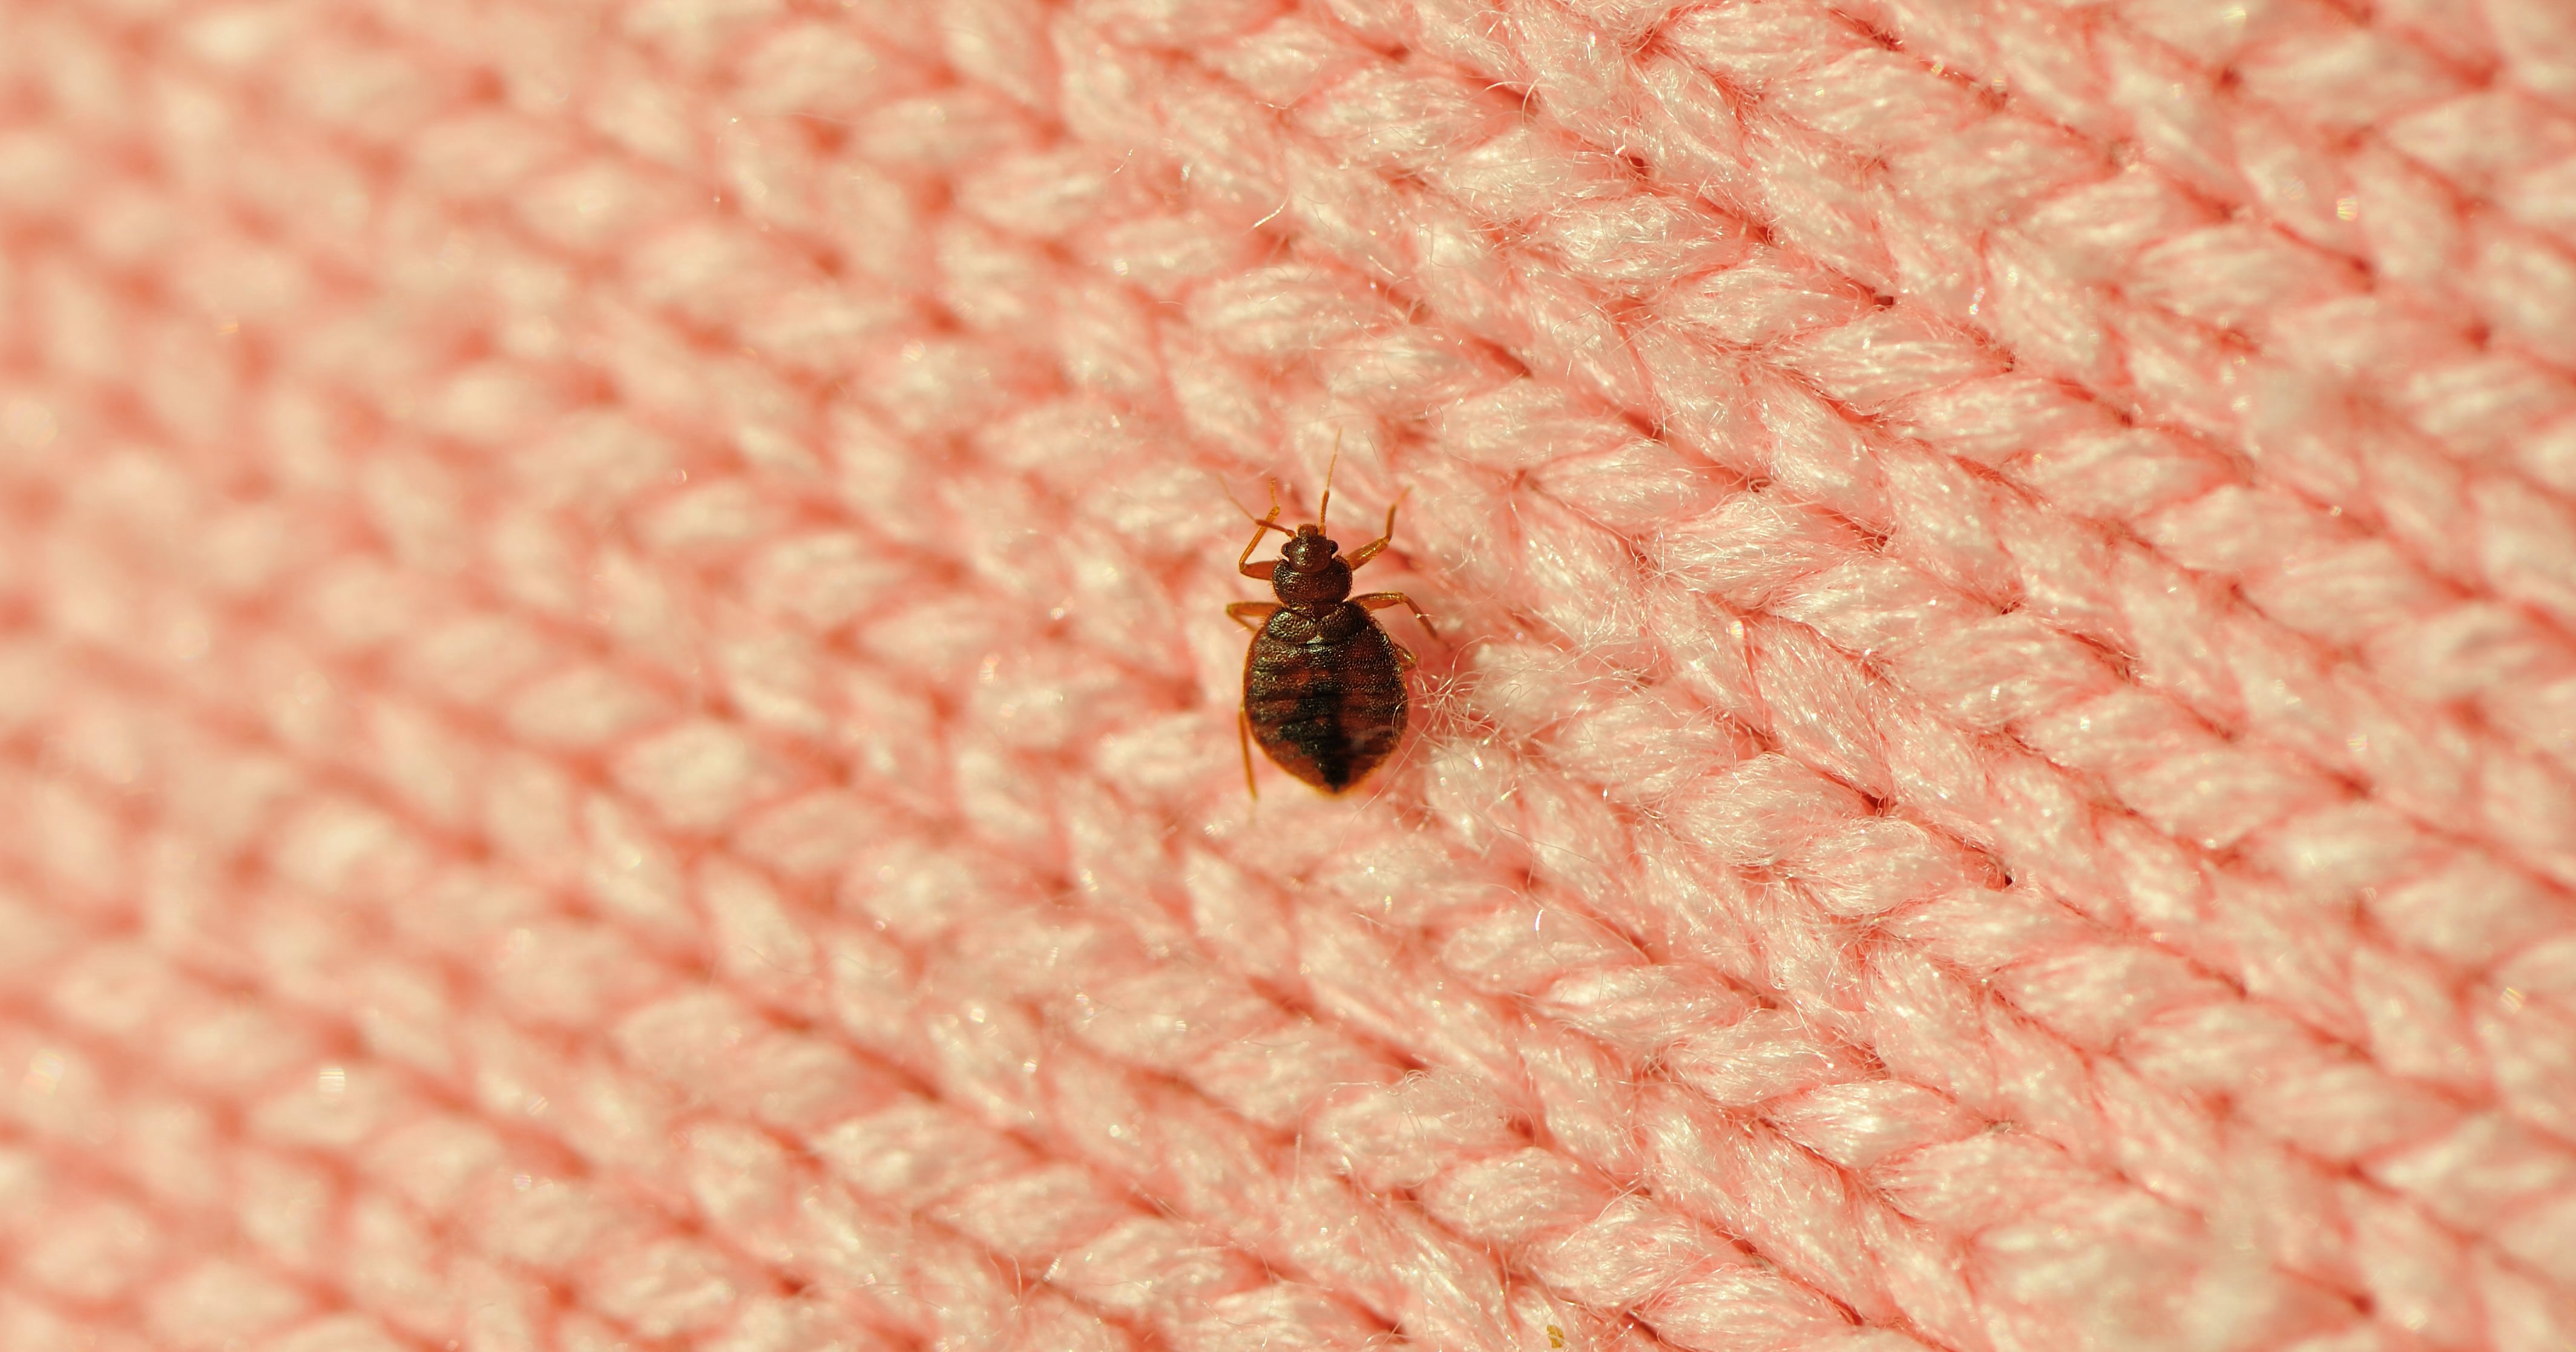 No bite for regulations on bedbug infestations